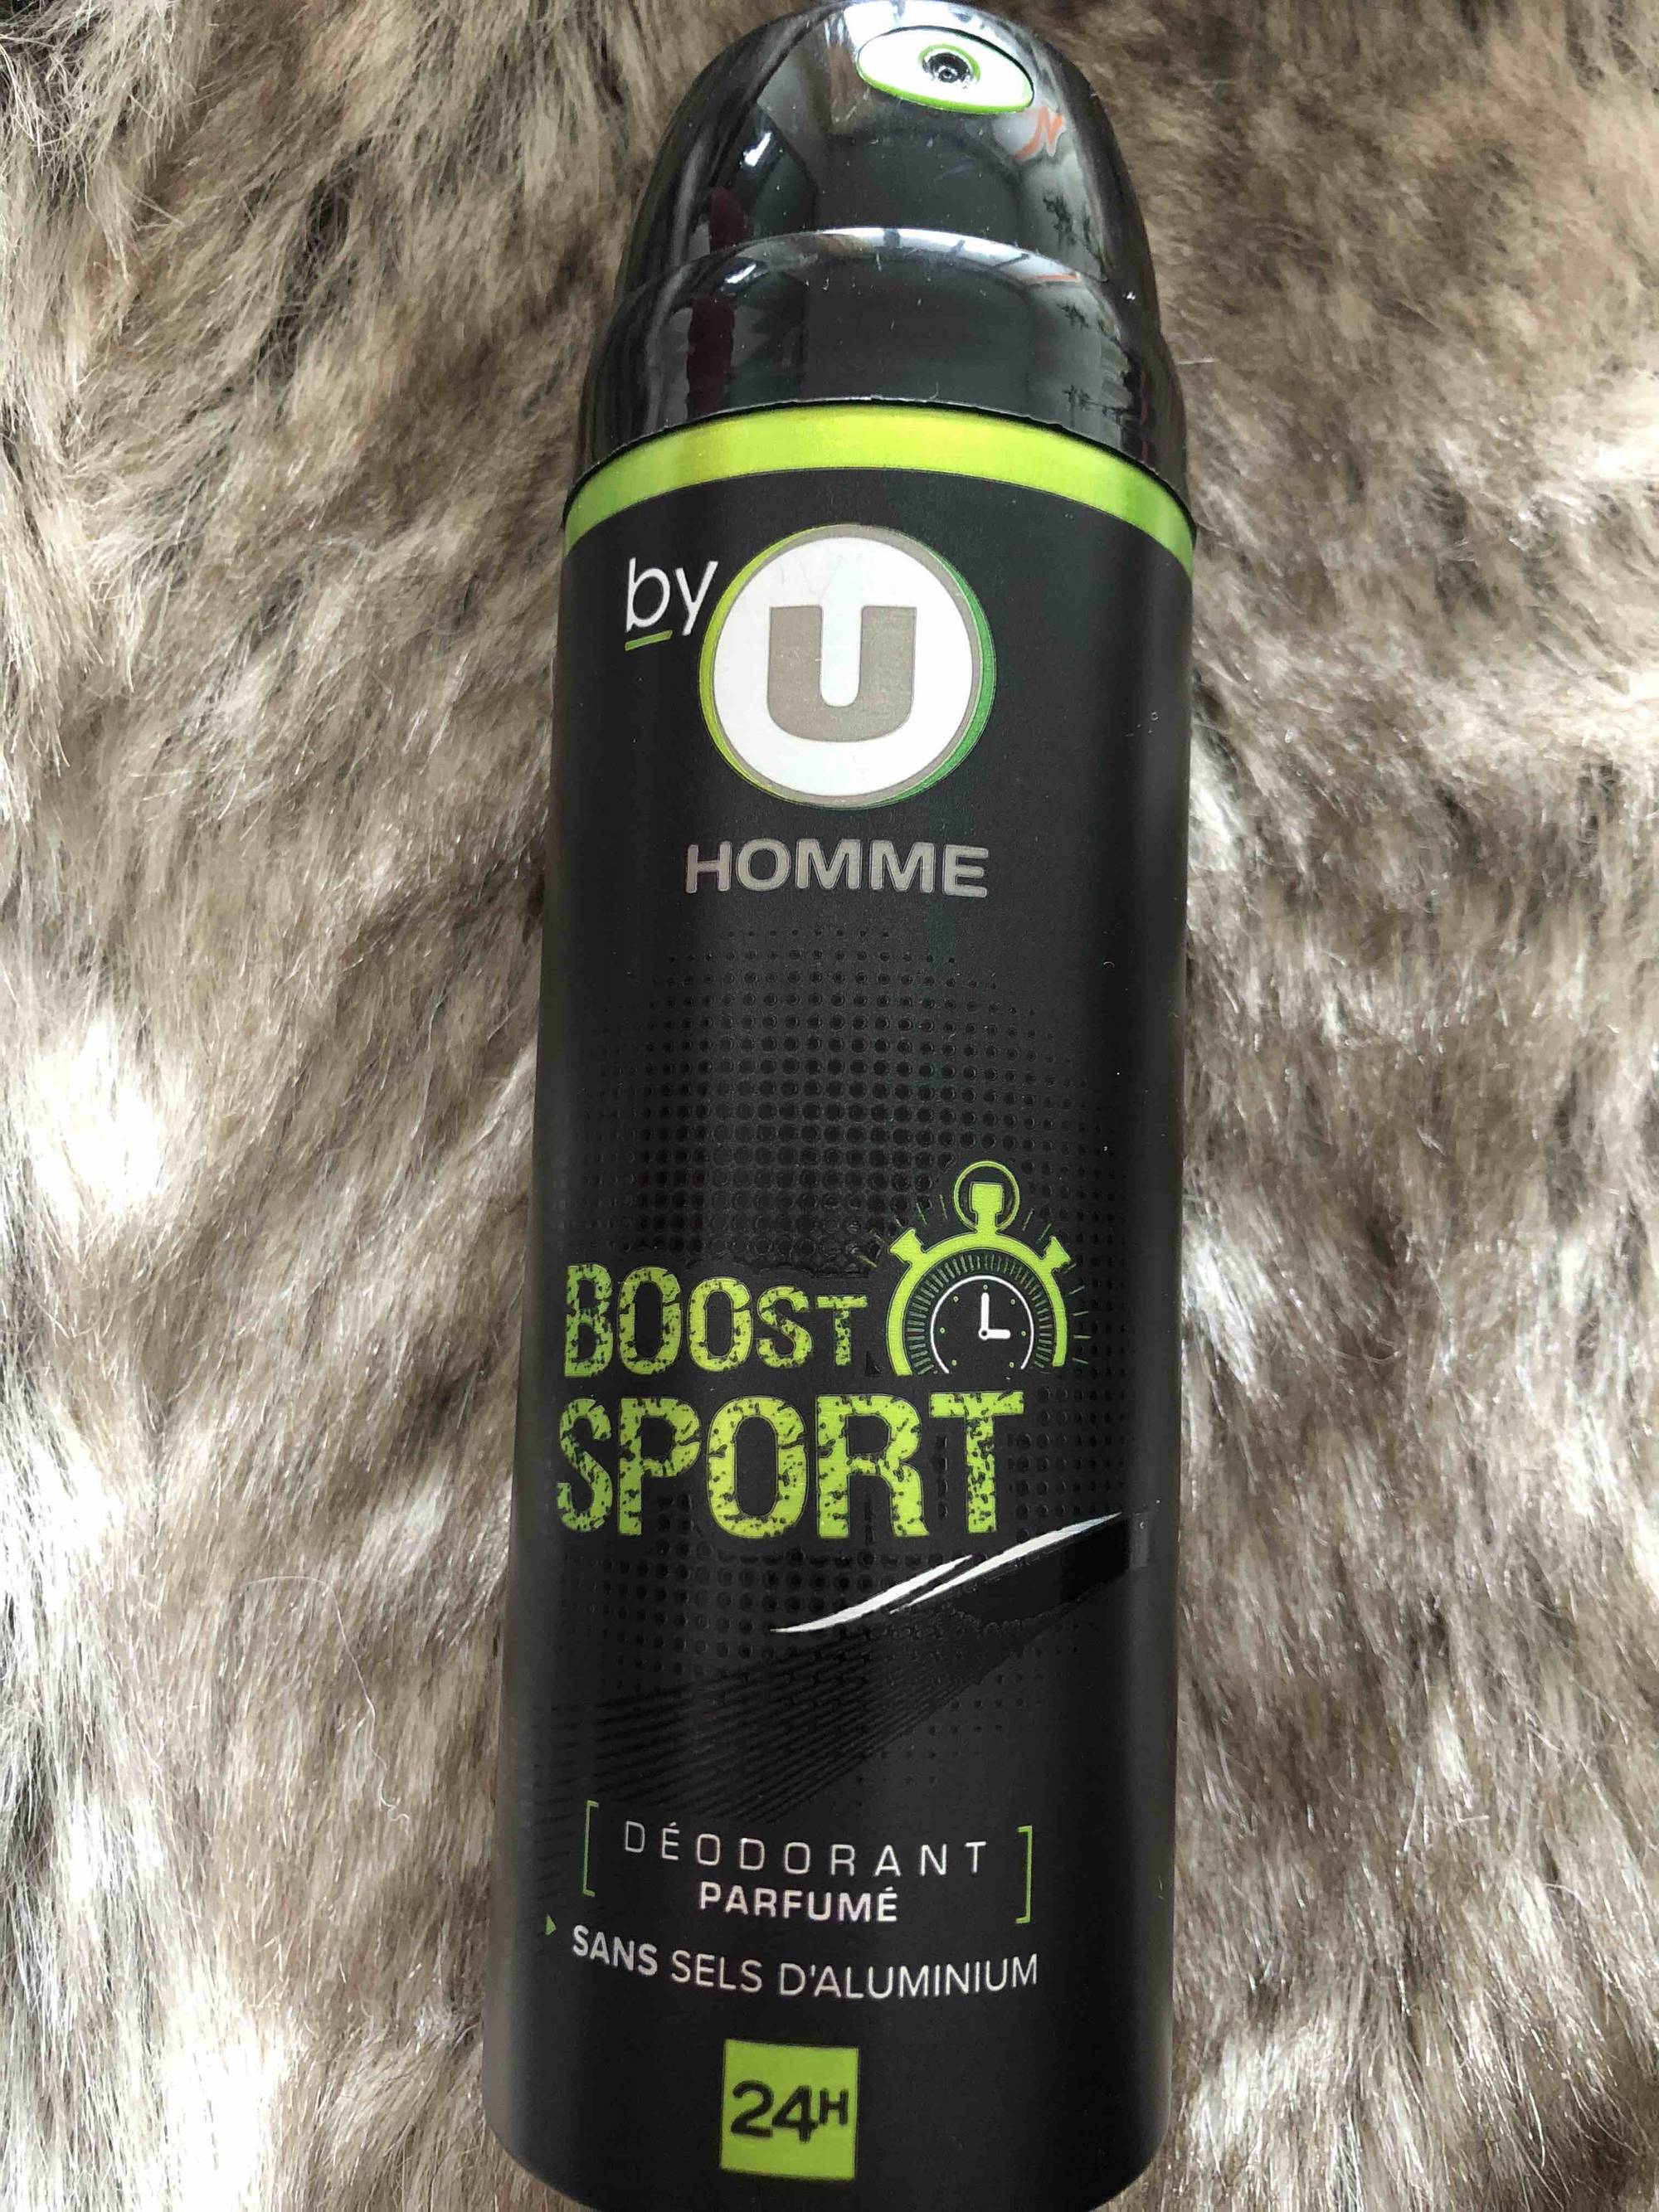 BY U - Homme - Déodorant parfumé Boost sport 24h